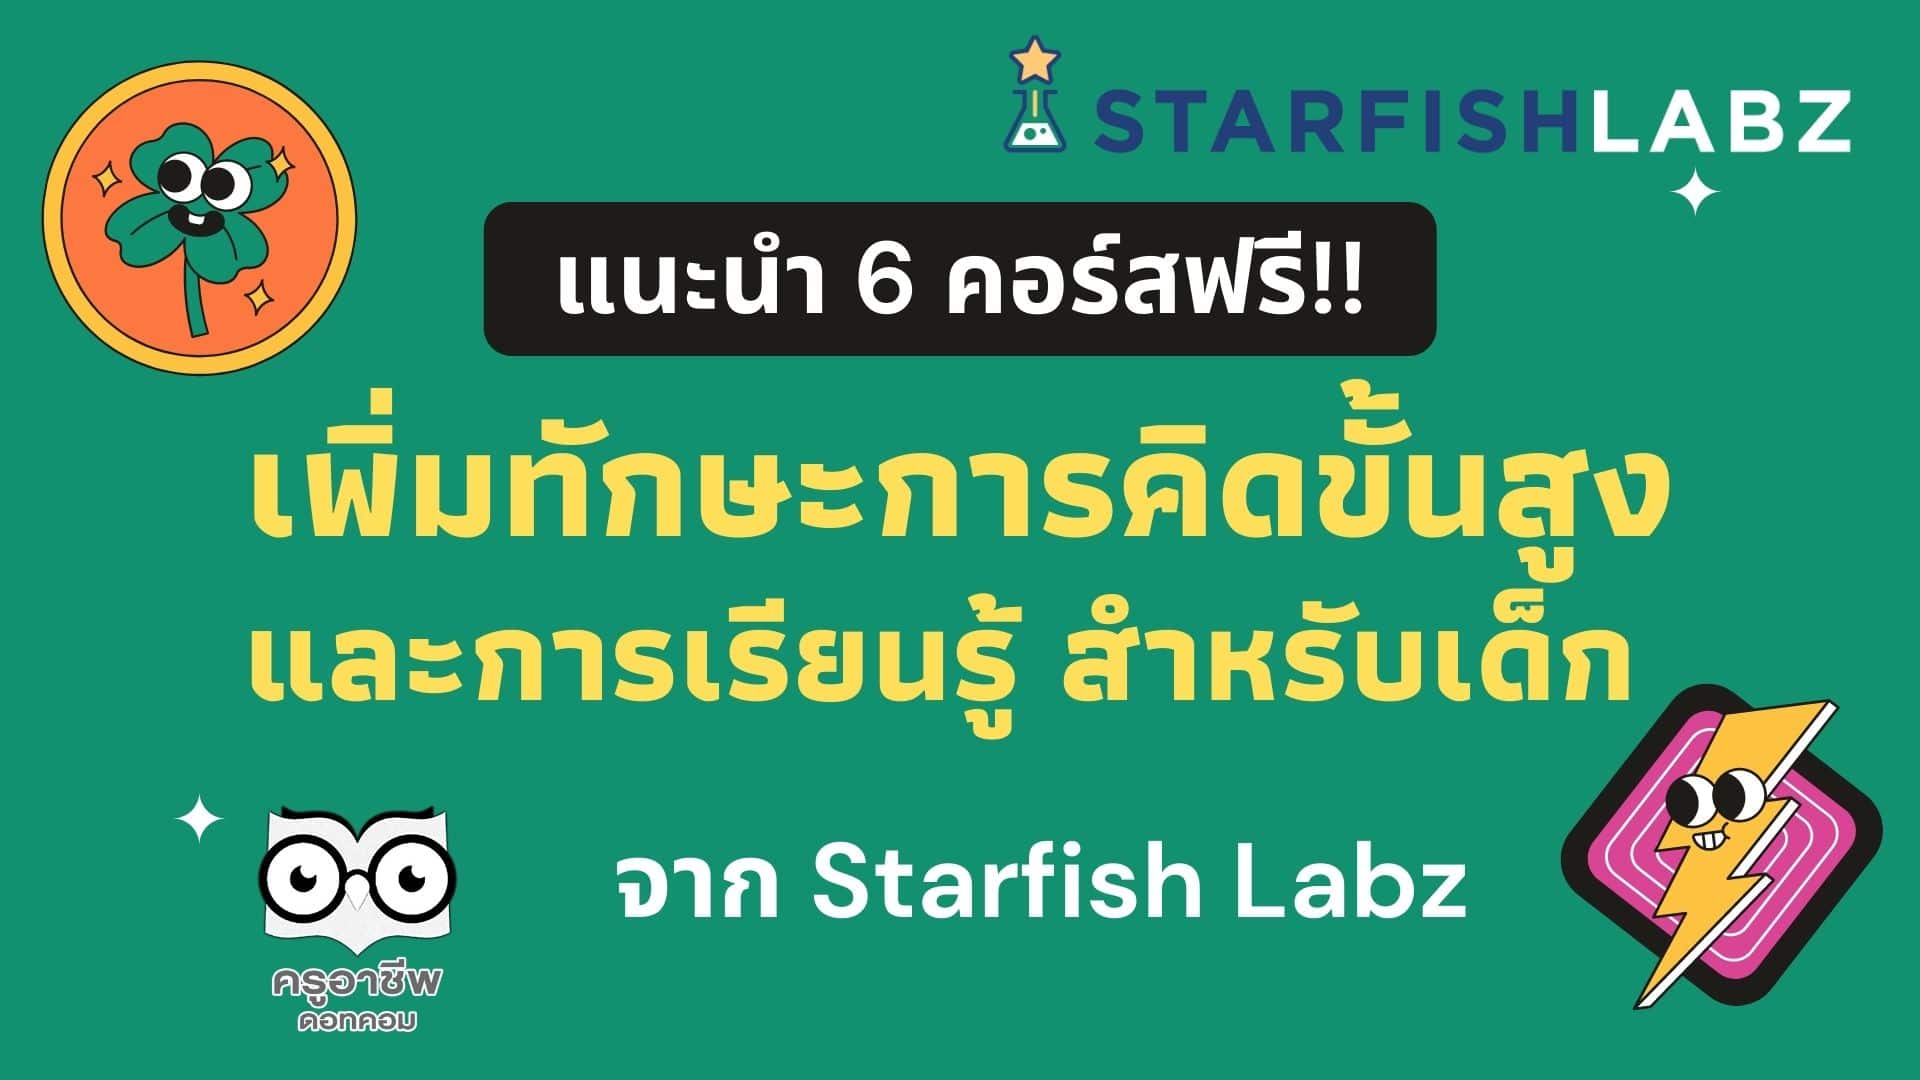 ขอแนะนำ 6 คอร์ส เพิ่มทักษะการคิดขั้นสูงและการเรียนรู้ สำหรับเด็ก ๆ จาก Starfish Labz